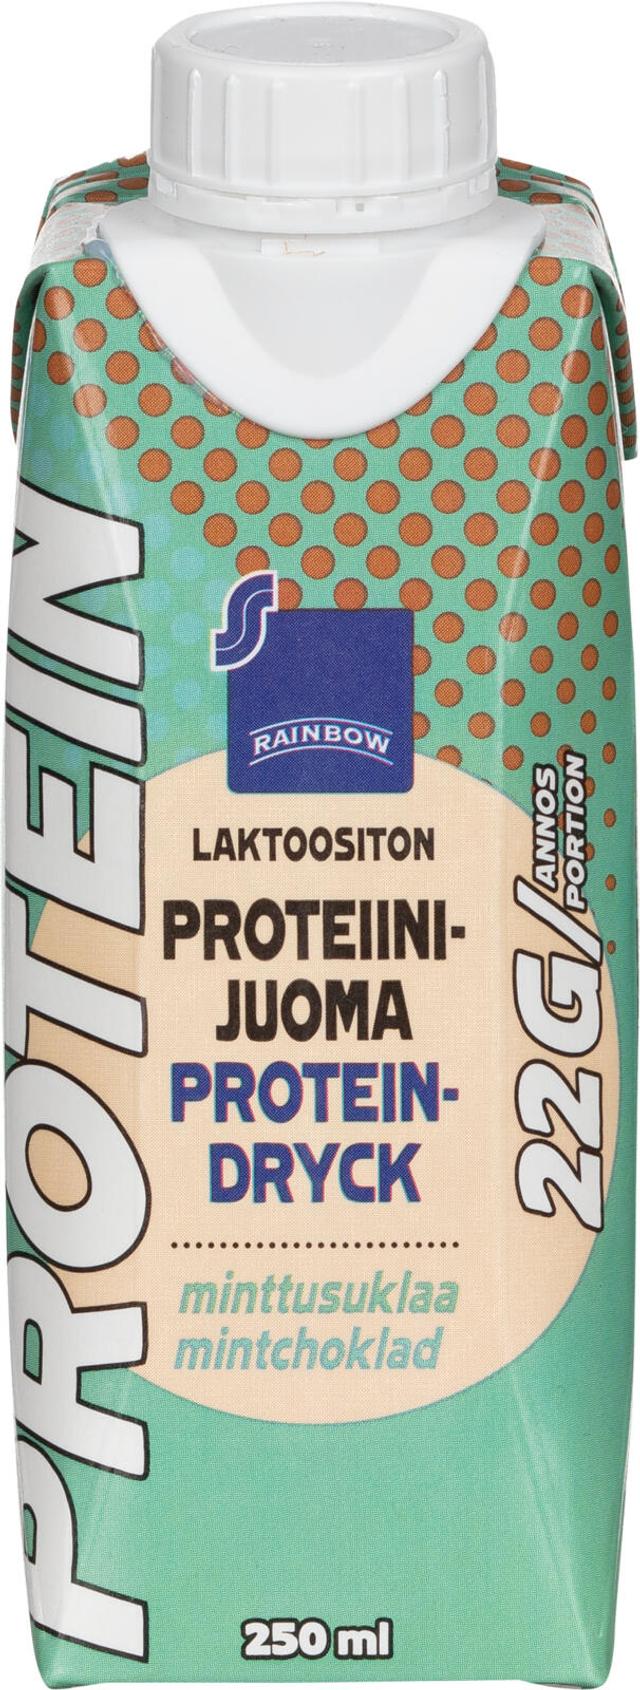 Rainbow Laktoositon proteiinijuoma minttusuklaa 250 ml